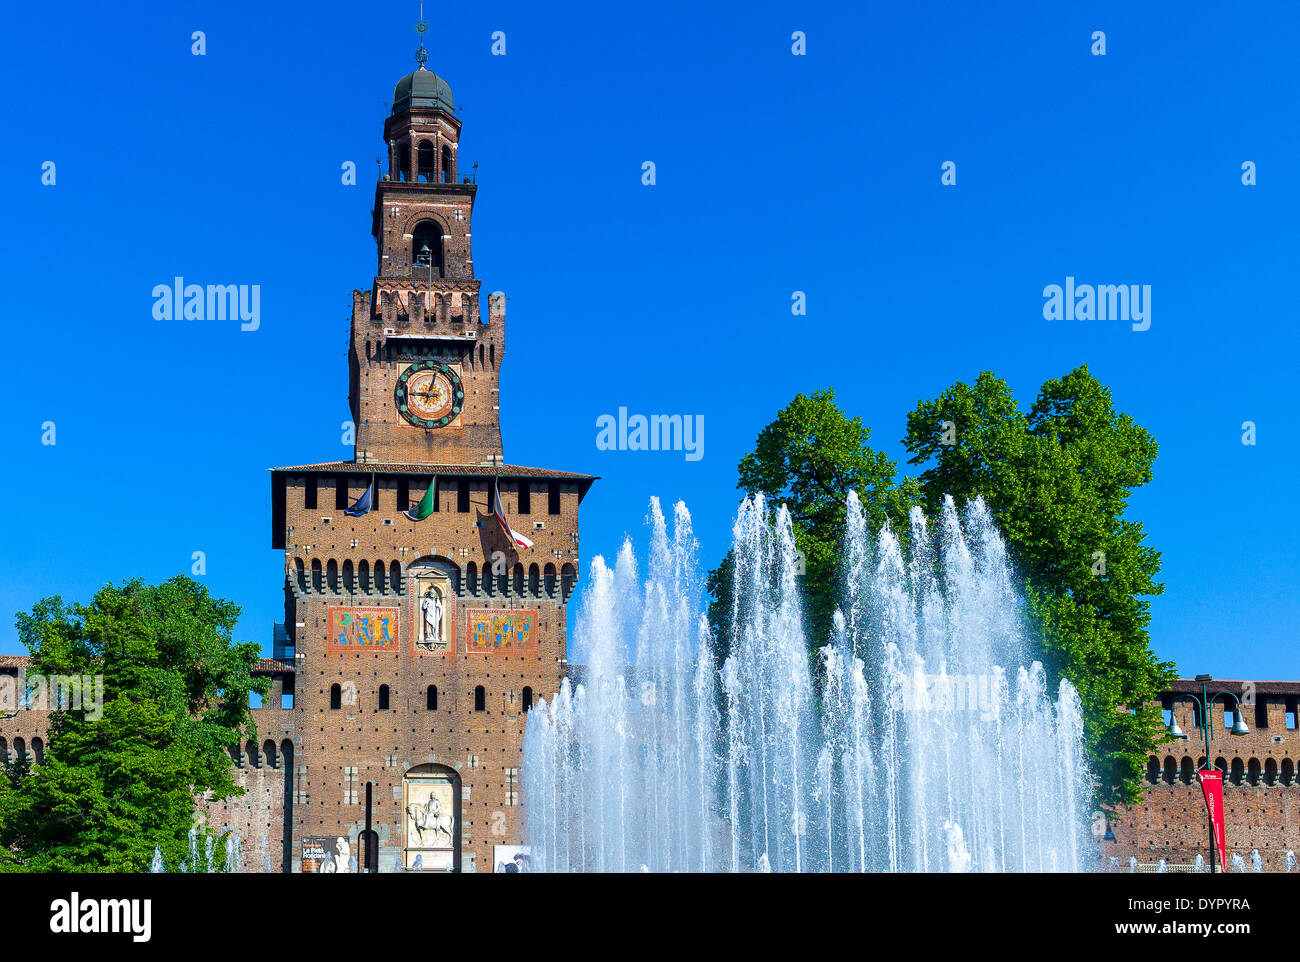 Milano, Italia. 23 apr 2014. Il Castello Sforzesco la fontana di credito: Davvero Facile Star/Alamy Live News Foto Stock